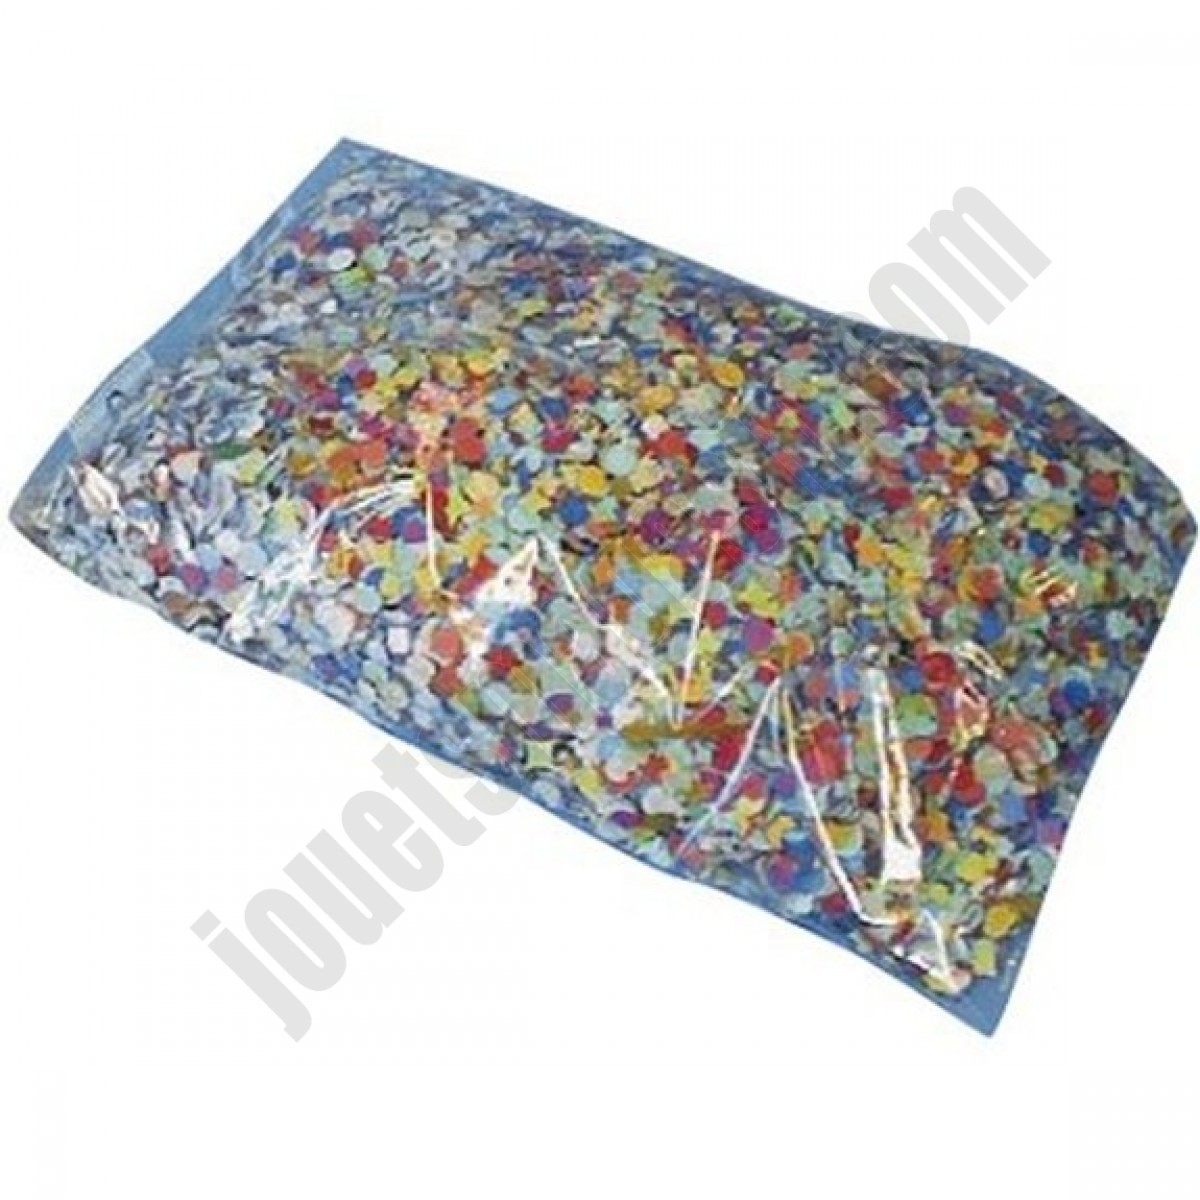 Sachet de 450g de Confettis multicolores - déstockage - Sachet de 450g de Confettis multicolores - déstockage